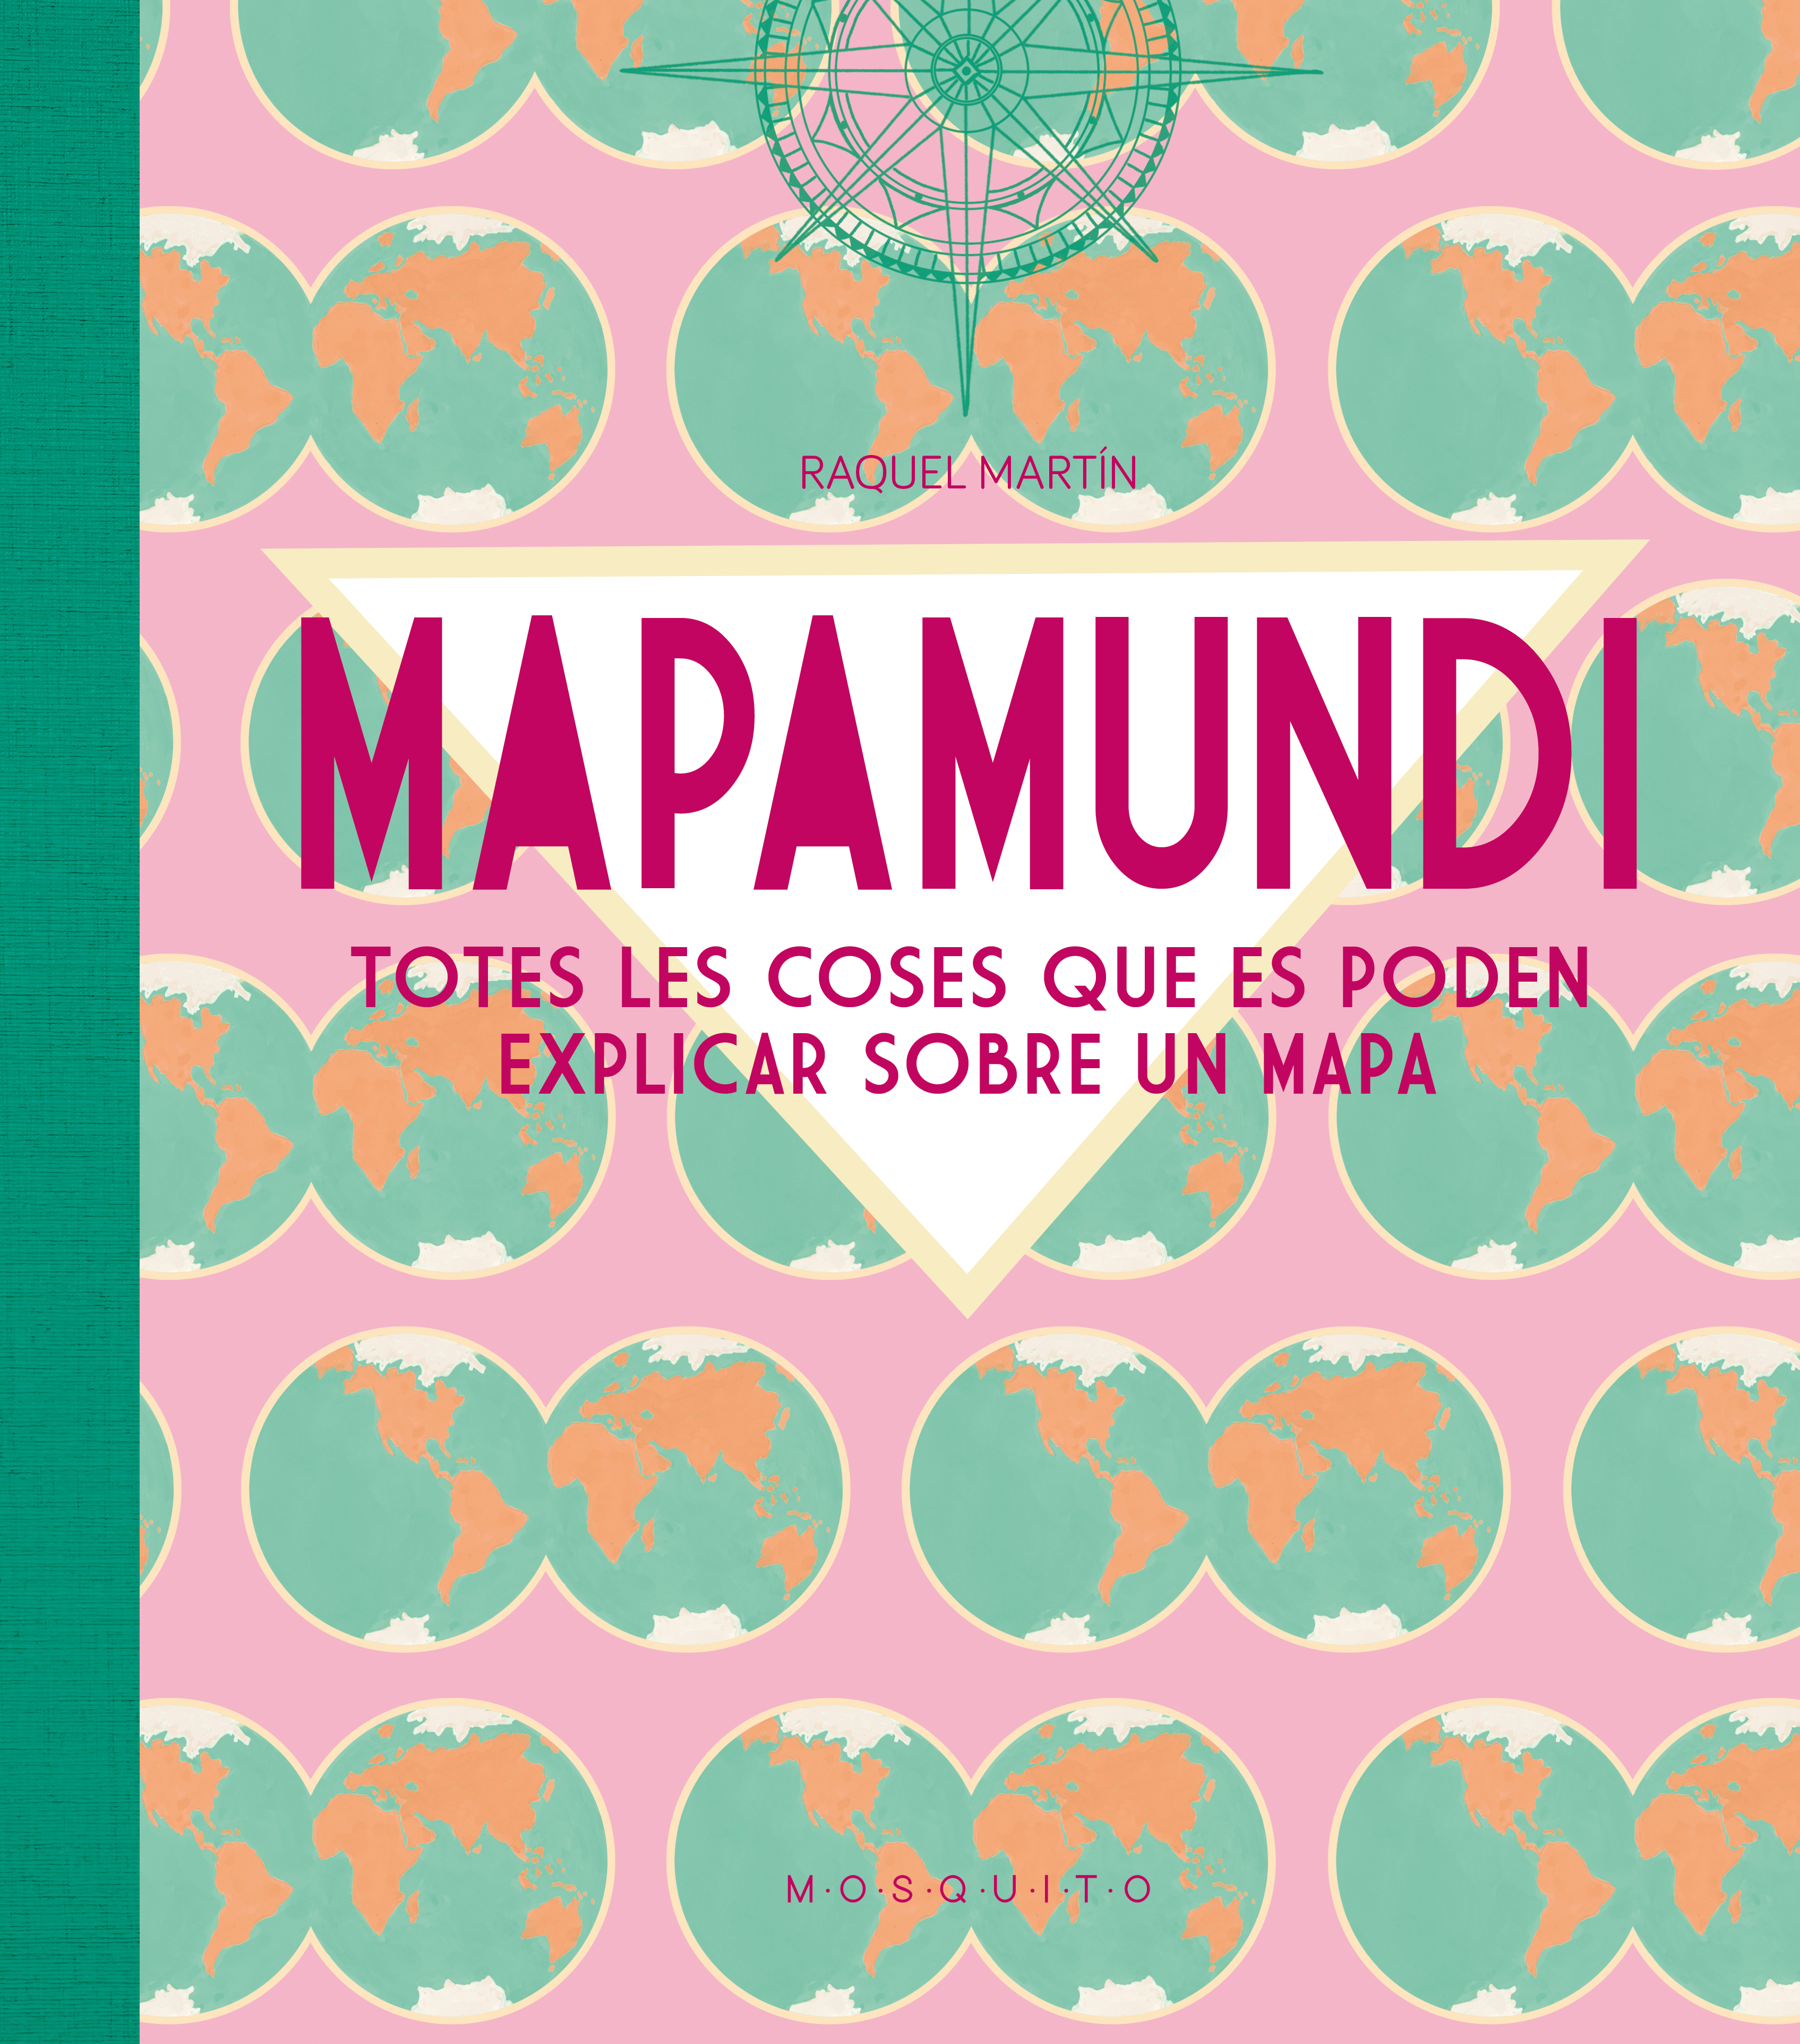 MAPAMUNDI - CATALÀ «TOTES LES COSES QUE ES PODEN EXPLICAR SOBRE UN MAPA»